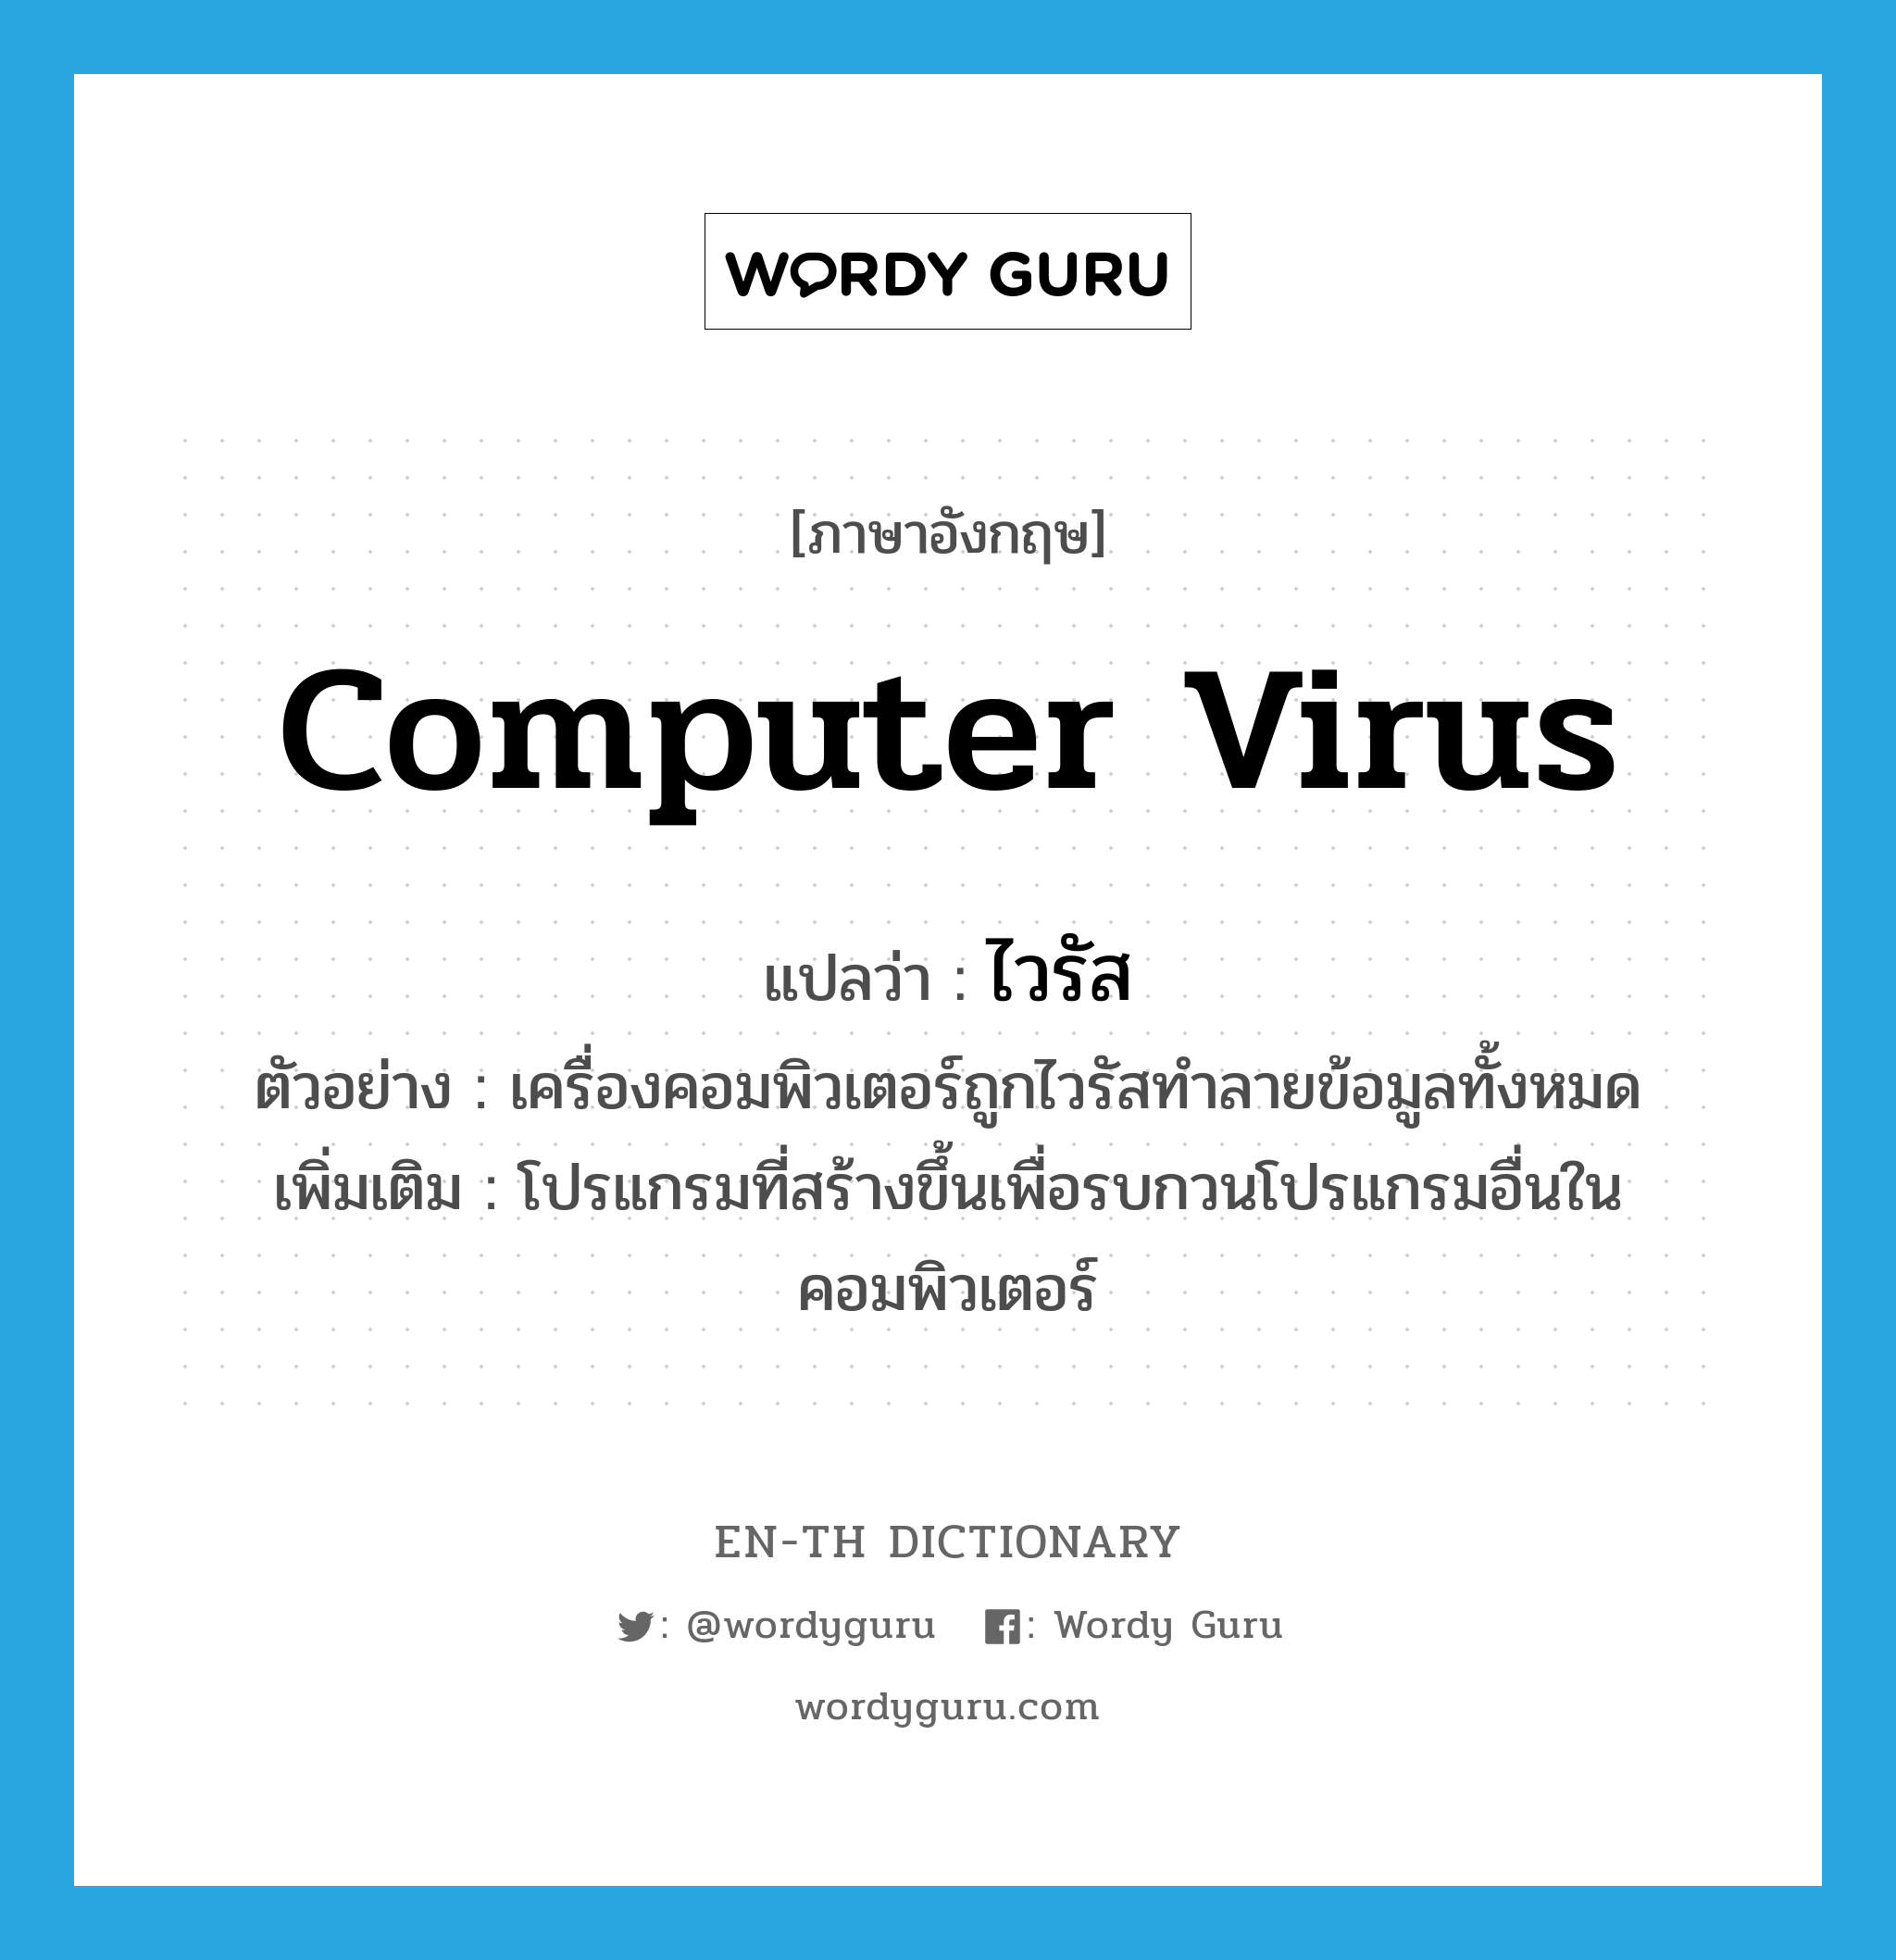 ไวรัส ภาษาอังกฤษ?, คำศัพท์ภาษาอังกฤษ ไวรัส แปลว่า computer virus ประเภท N ตัวอย่าง เครื่องคอมพิวเตอร์ถูกไวรัสทำลายข้อมูลทั้งหมด เพิ่มเติม โปรแกรมที่สร้างขึ้นเพื่อรบกวนโปรแกรมอื่นในคอมพิวเตอร์ หมวด N